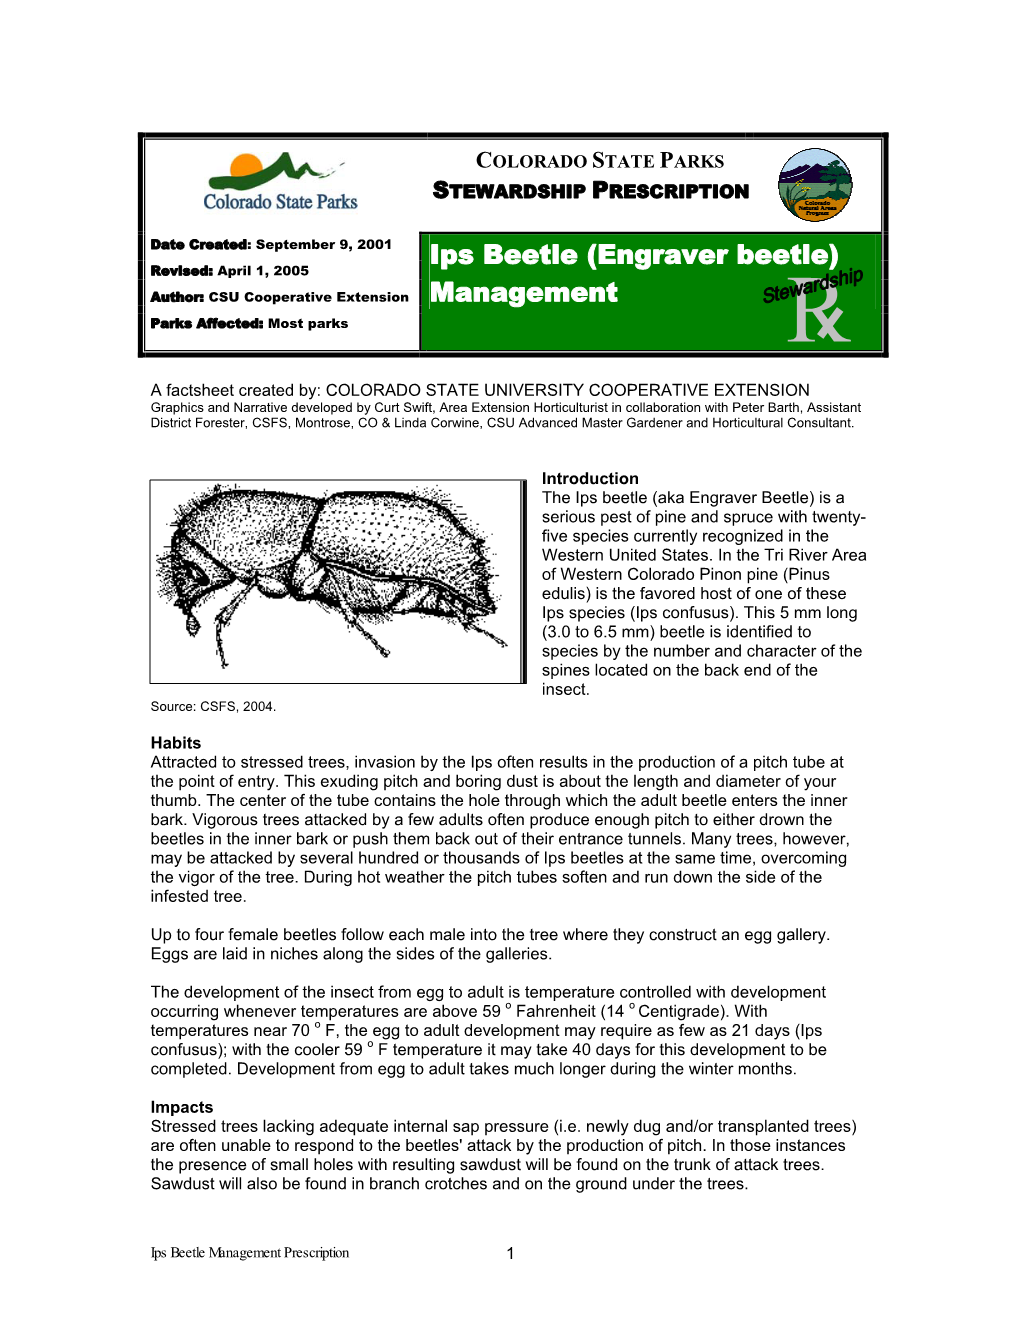 Ips Beetle Management Prescription 1